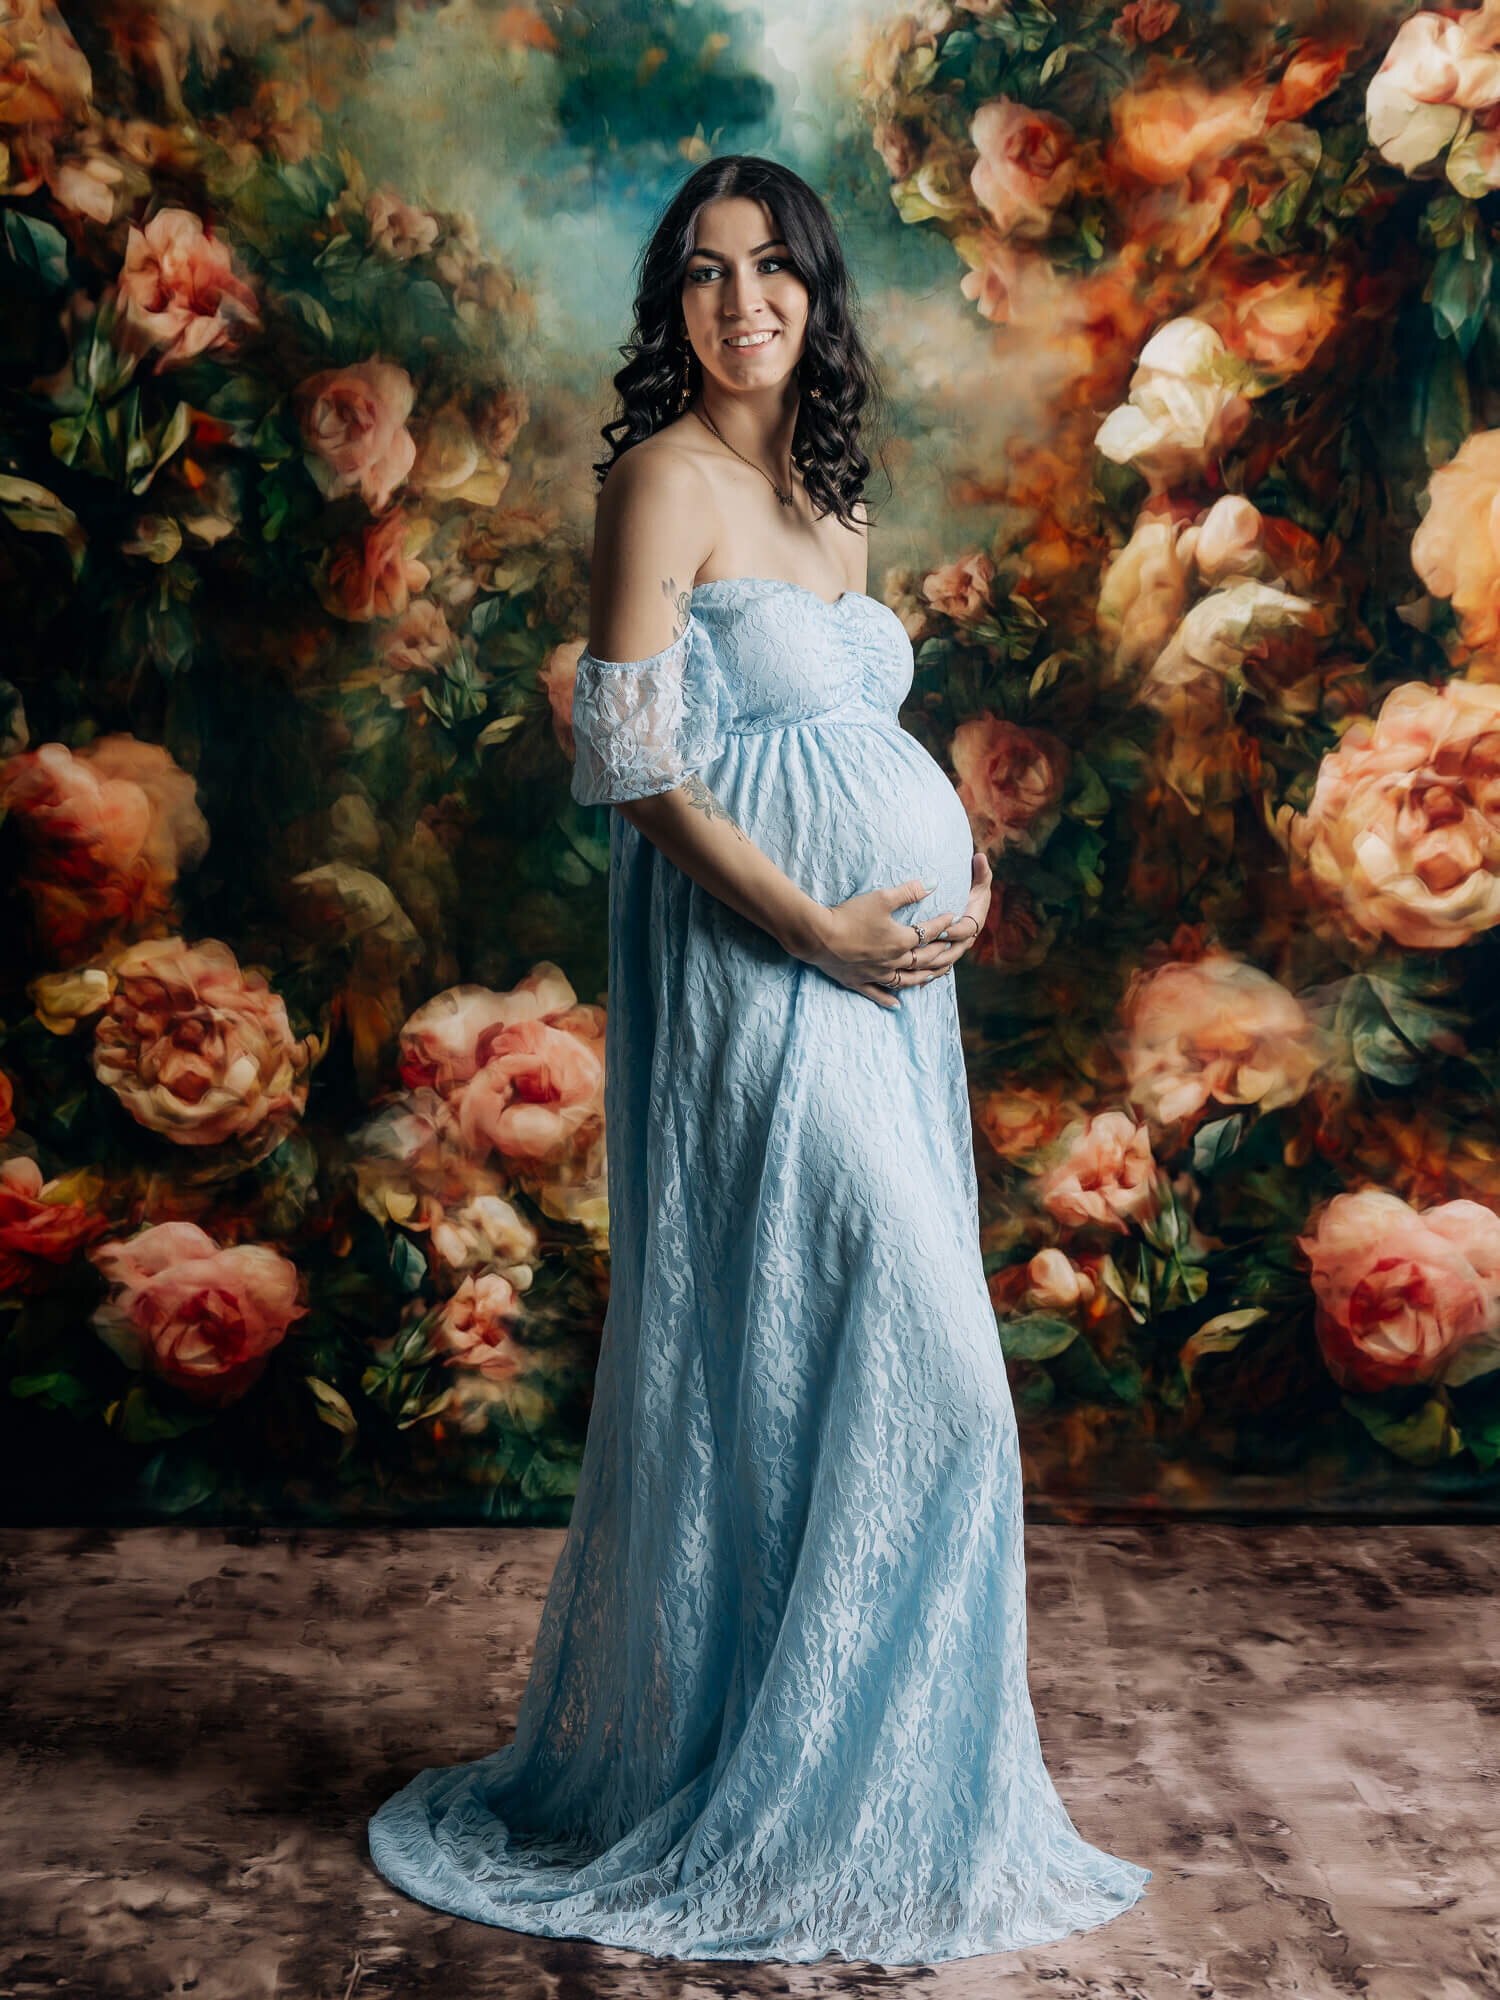 Prescott AZ maternity photographer showcases pale blue lace dress